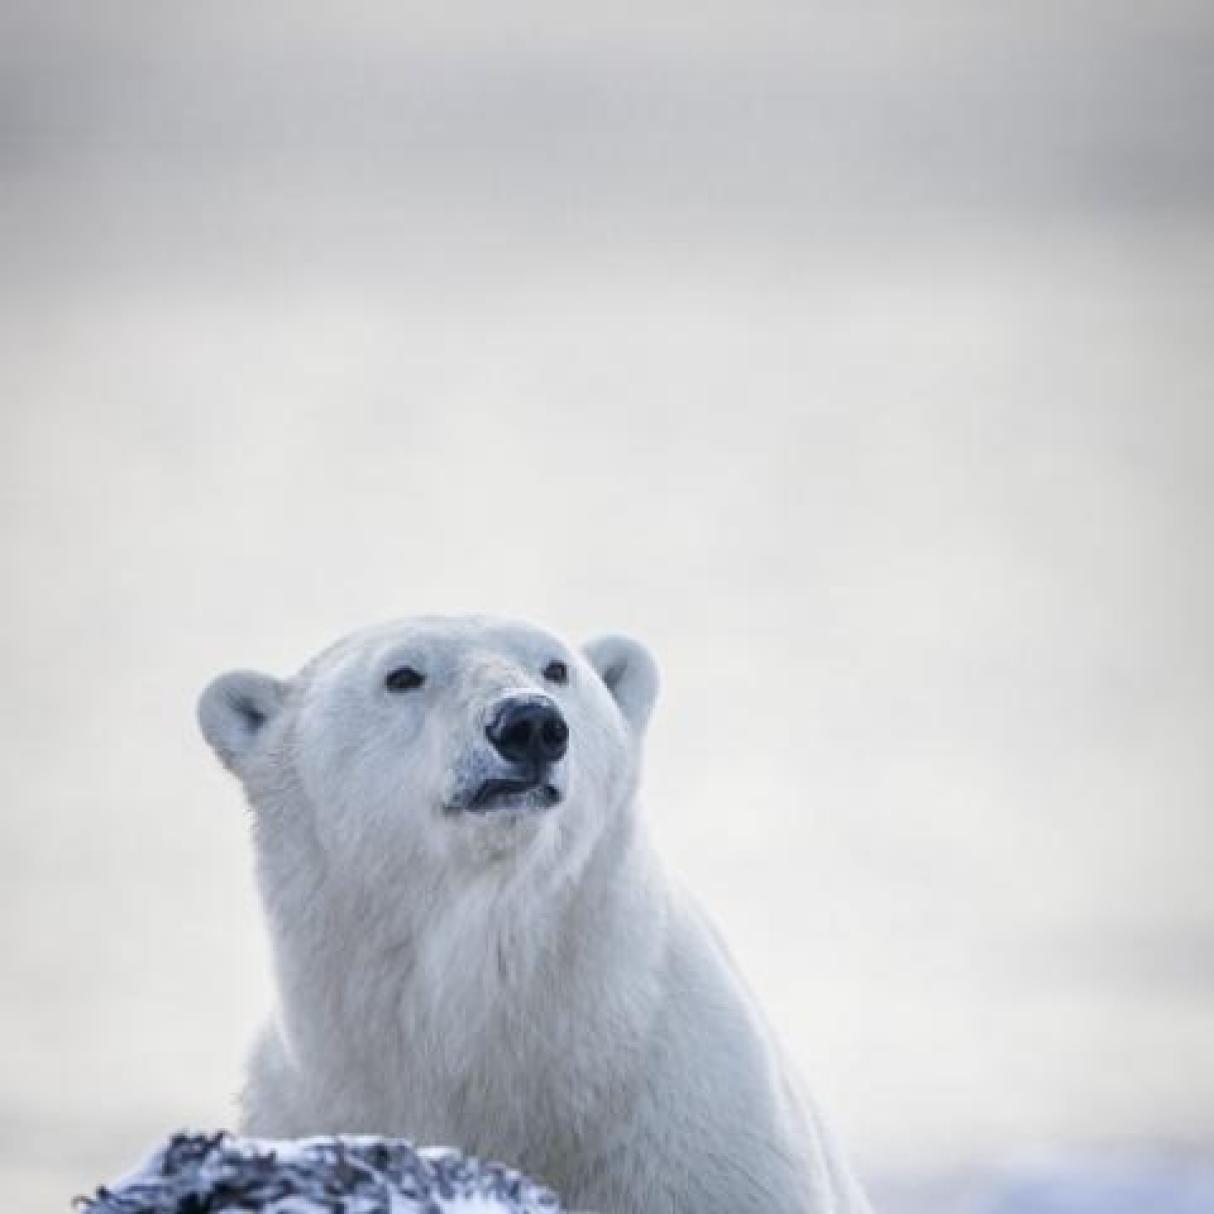 A polar bear on a rock